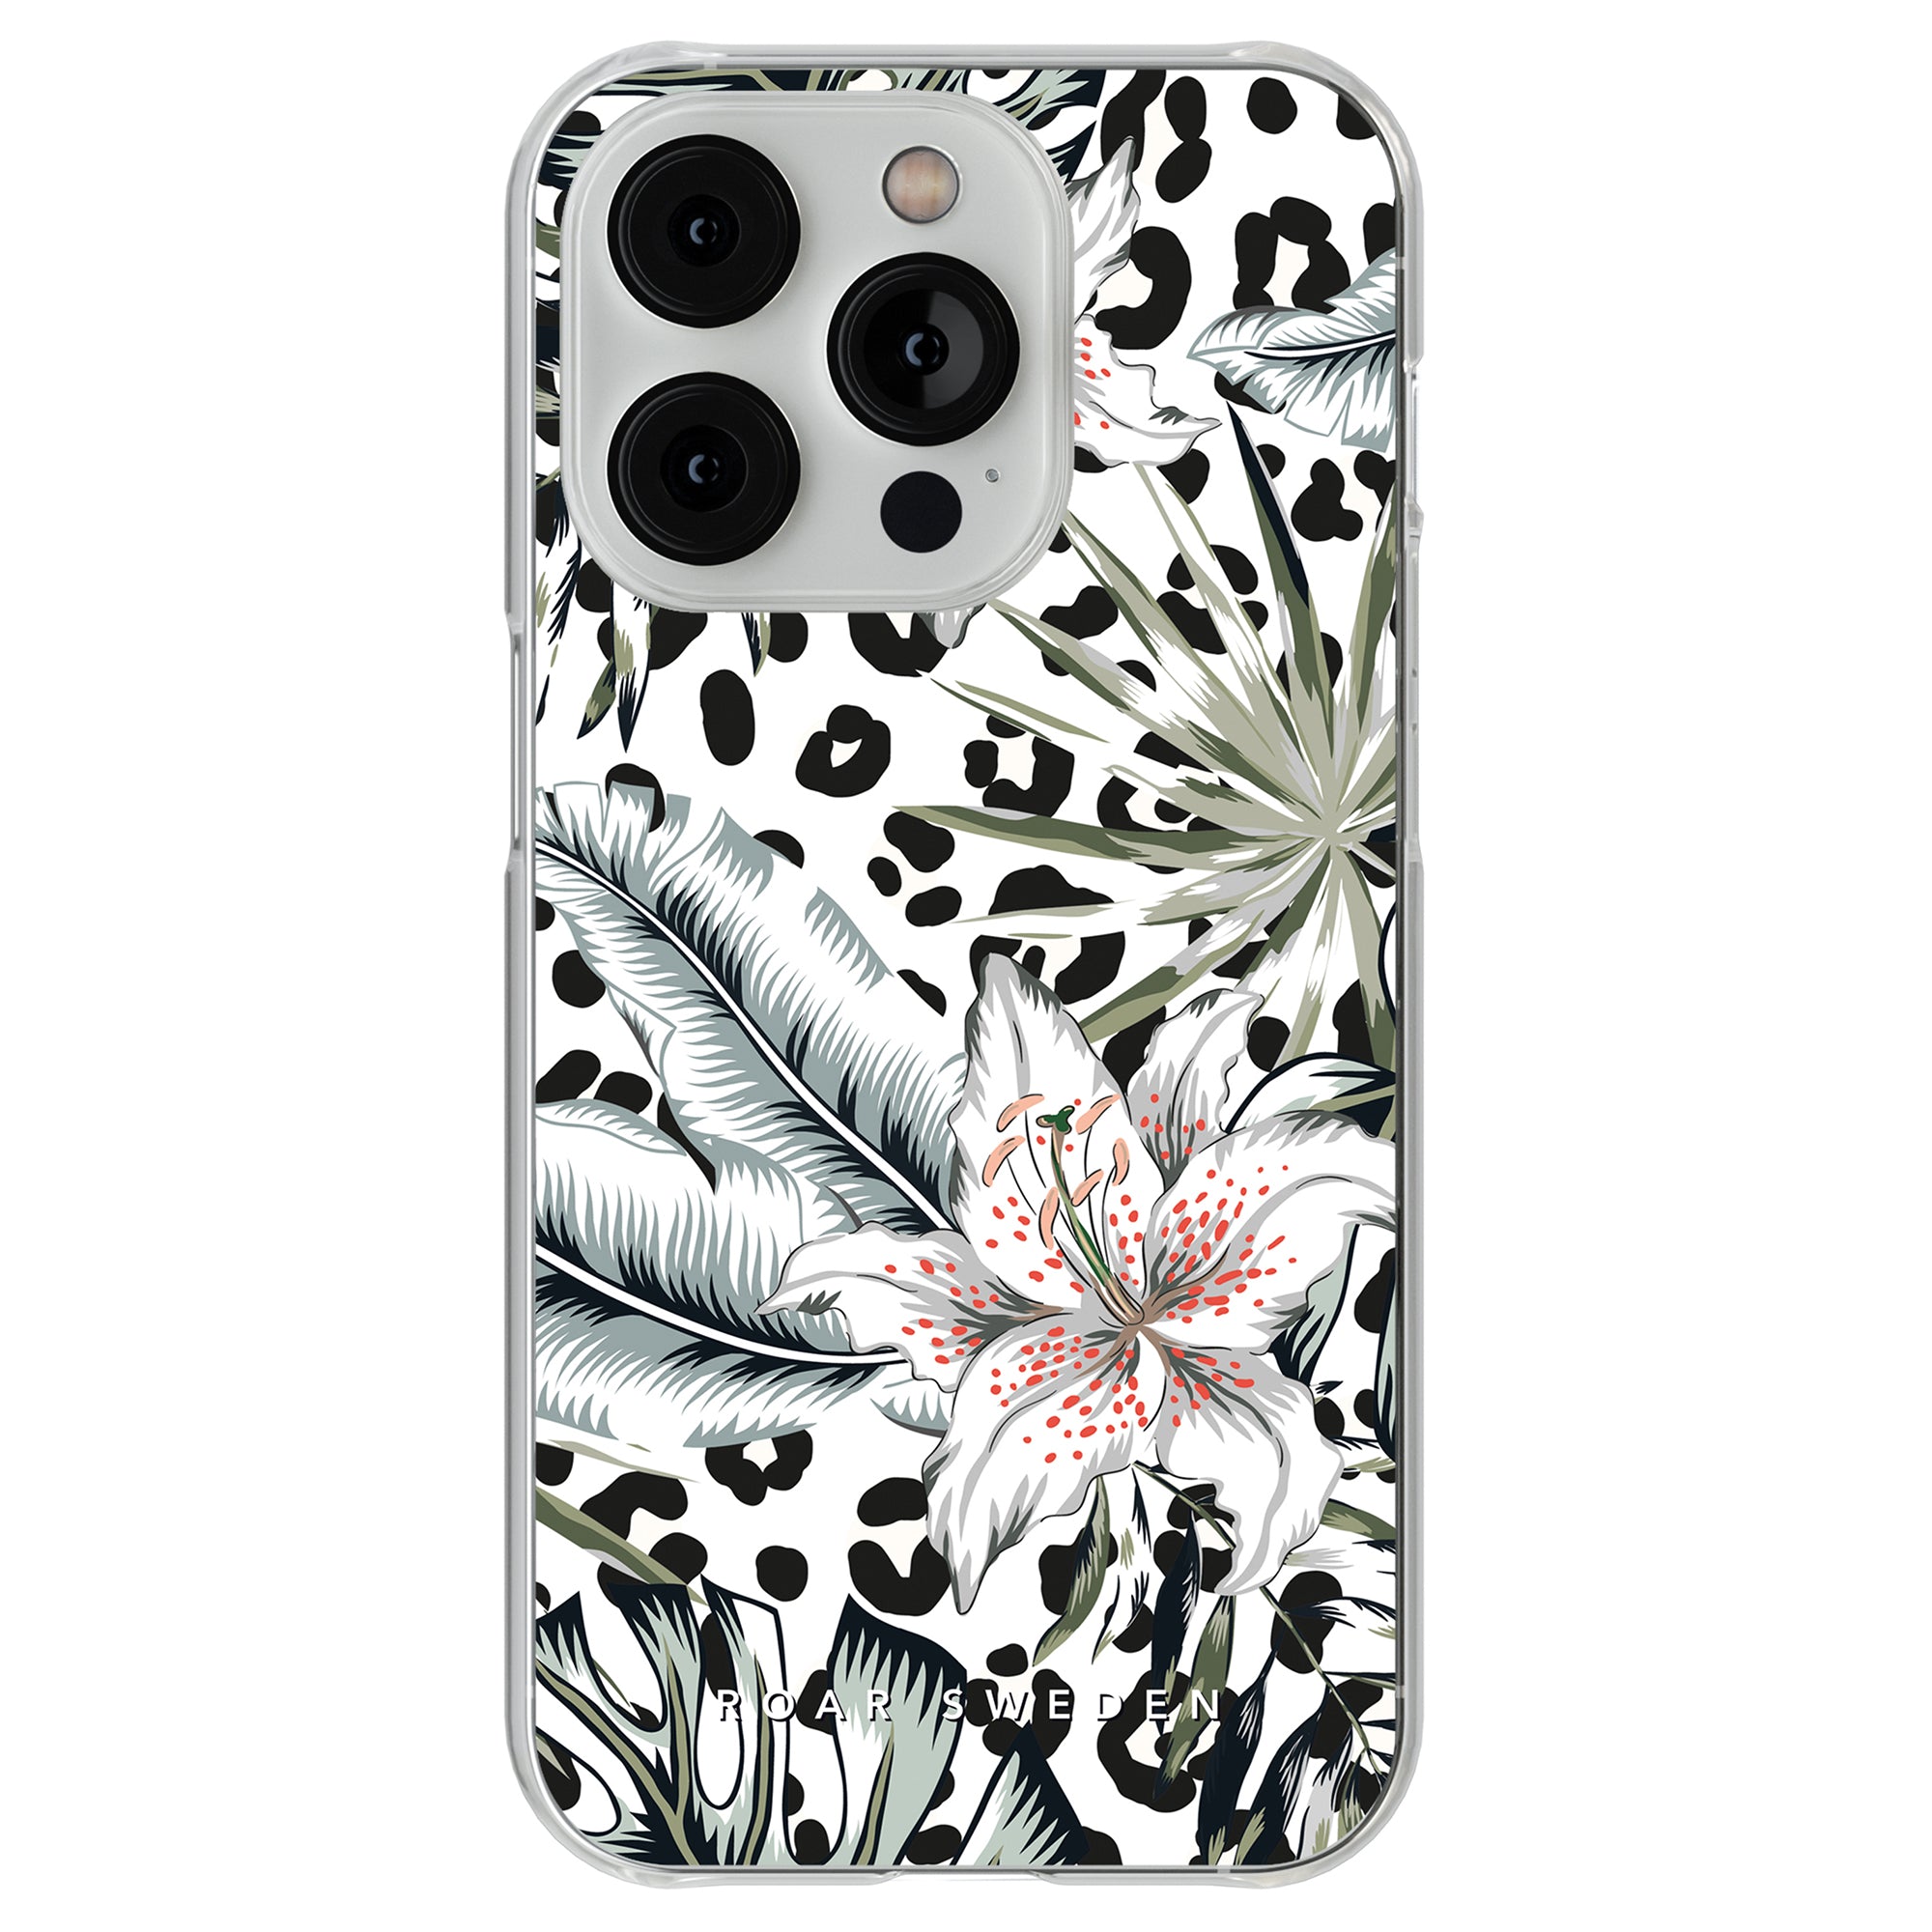 Ett svart och vitt lilja - genomskinligt fodral med leopardtryck, perfekt för dig som älskar vildlivsinspirerad design.